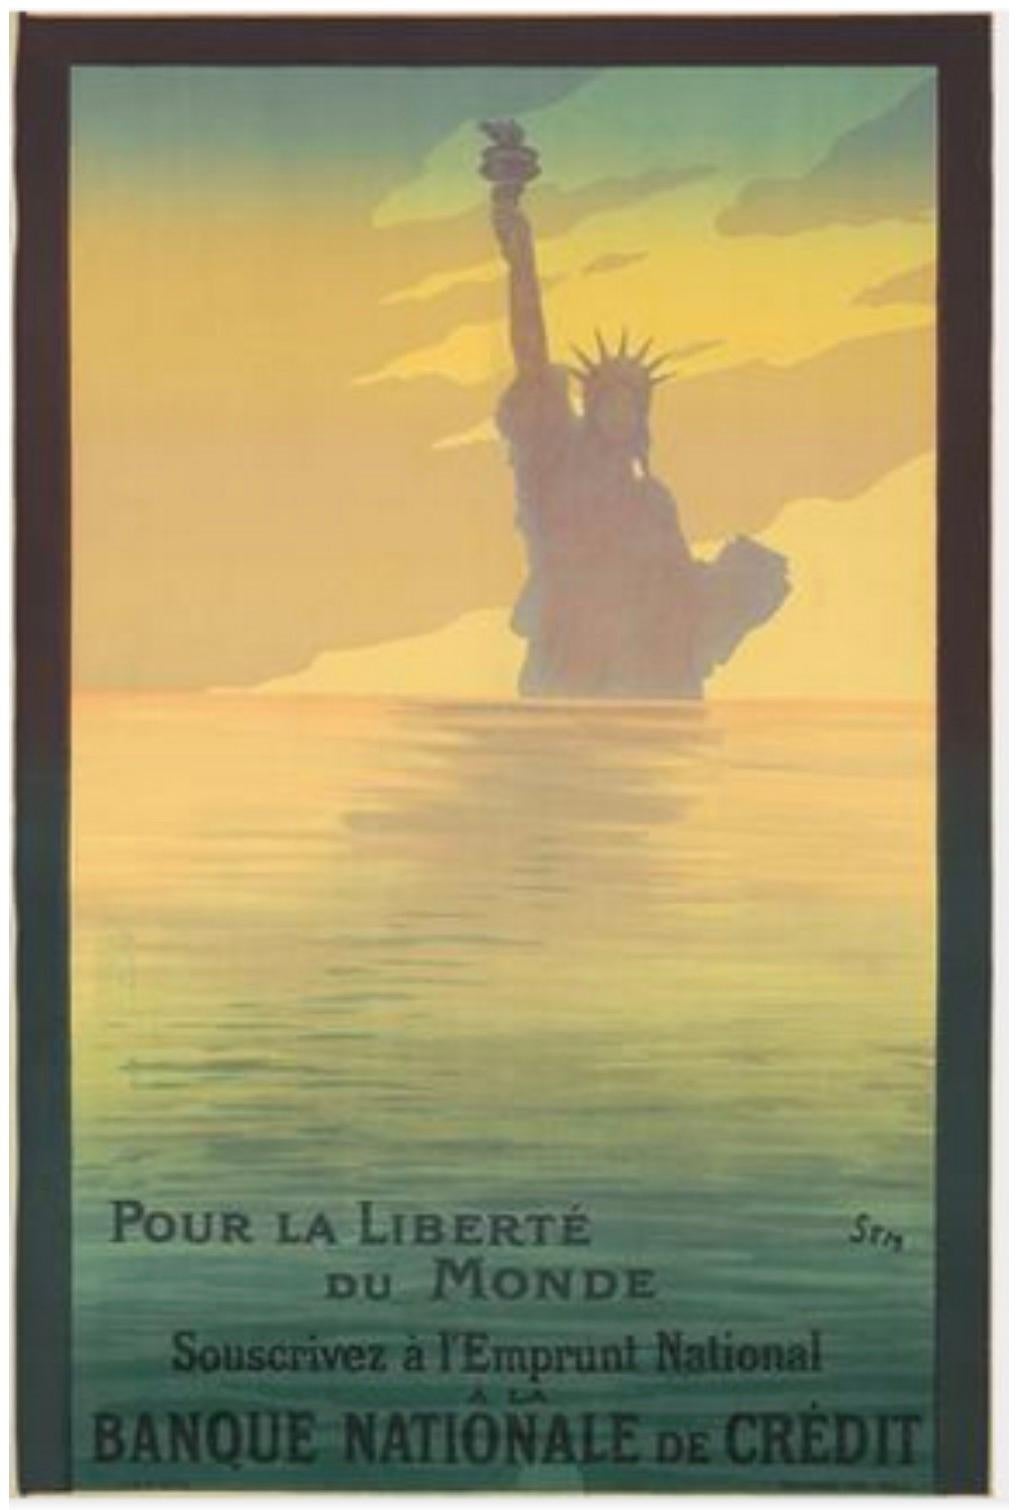 Artistics : SEM Georges Goursat (français, 1863-1934)

Date d'origine : 1917

Moyen : Lithographie originale sur pierre, Vintage By

Taille : 31″ x 47